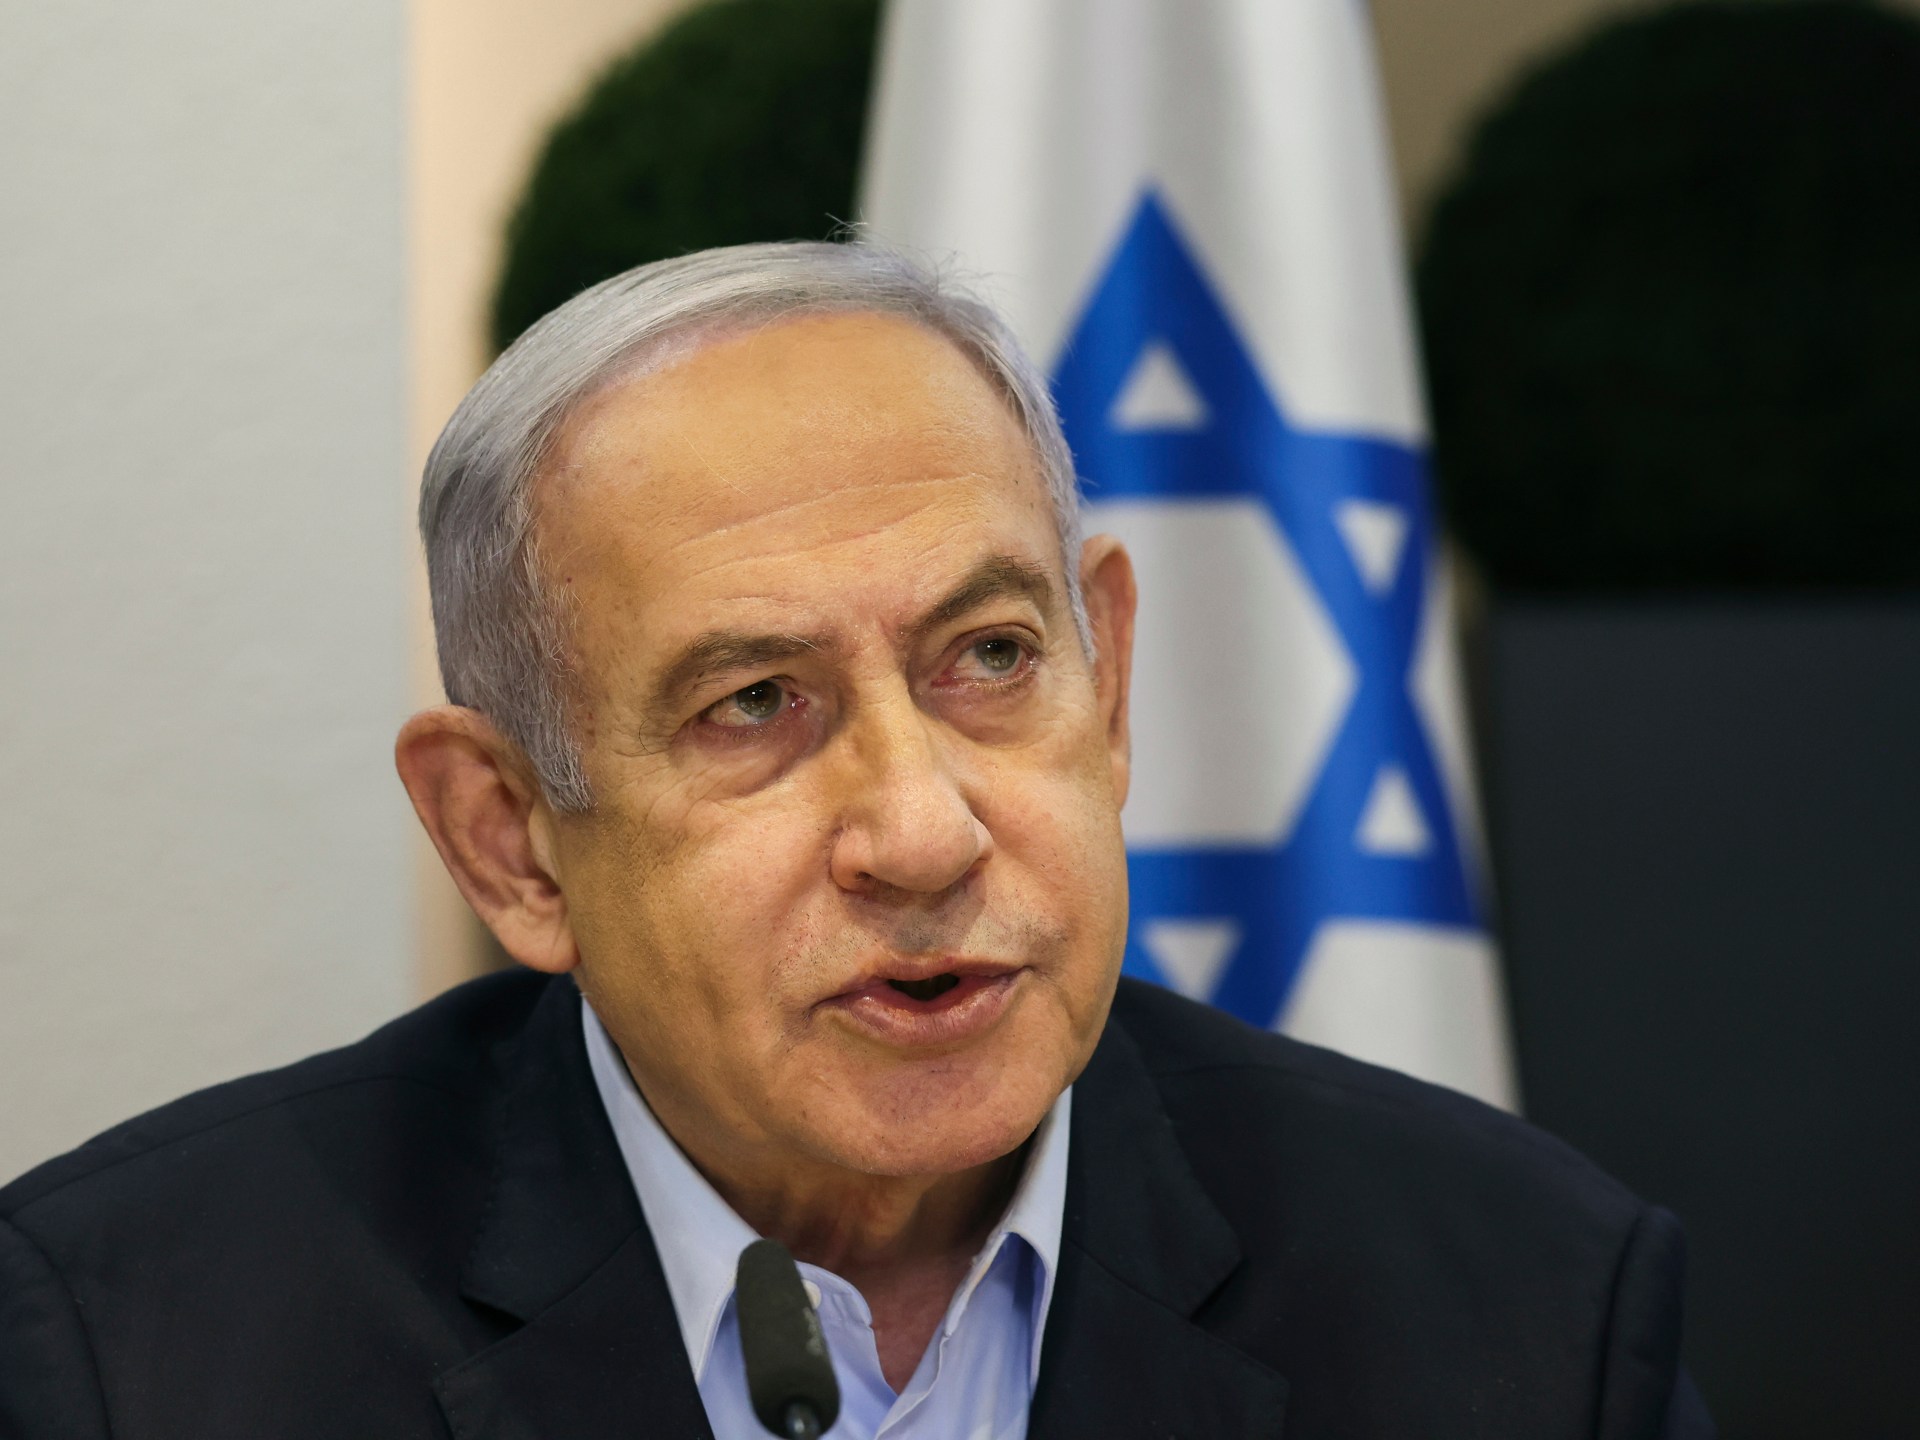 نتنياهو يعلن مواصلة الحرب بغزة وغالانت يشير لإمكانية المواجهة مع حزب الله | أخبار – البوكس نيوز